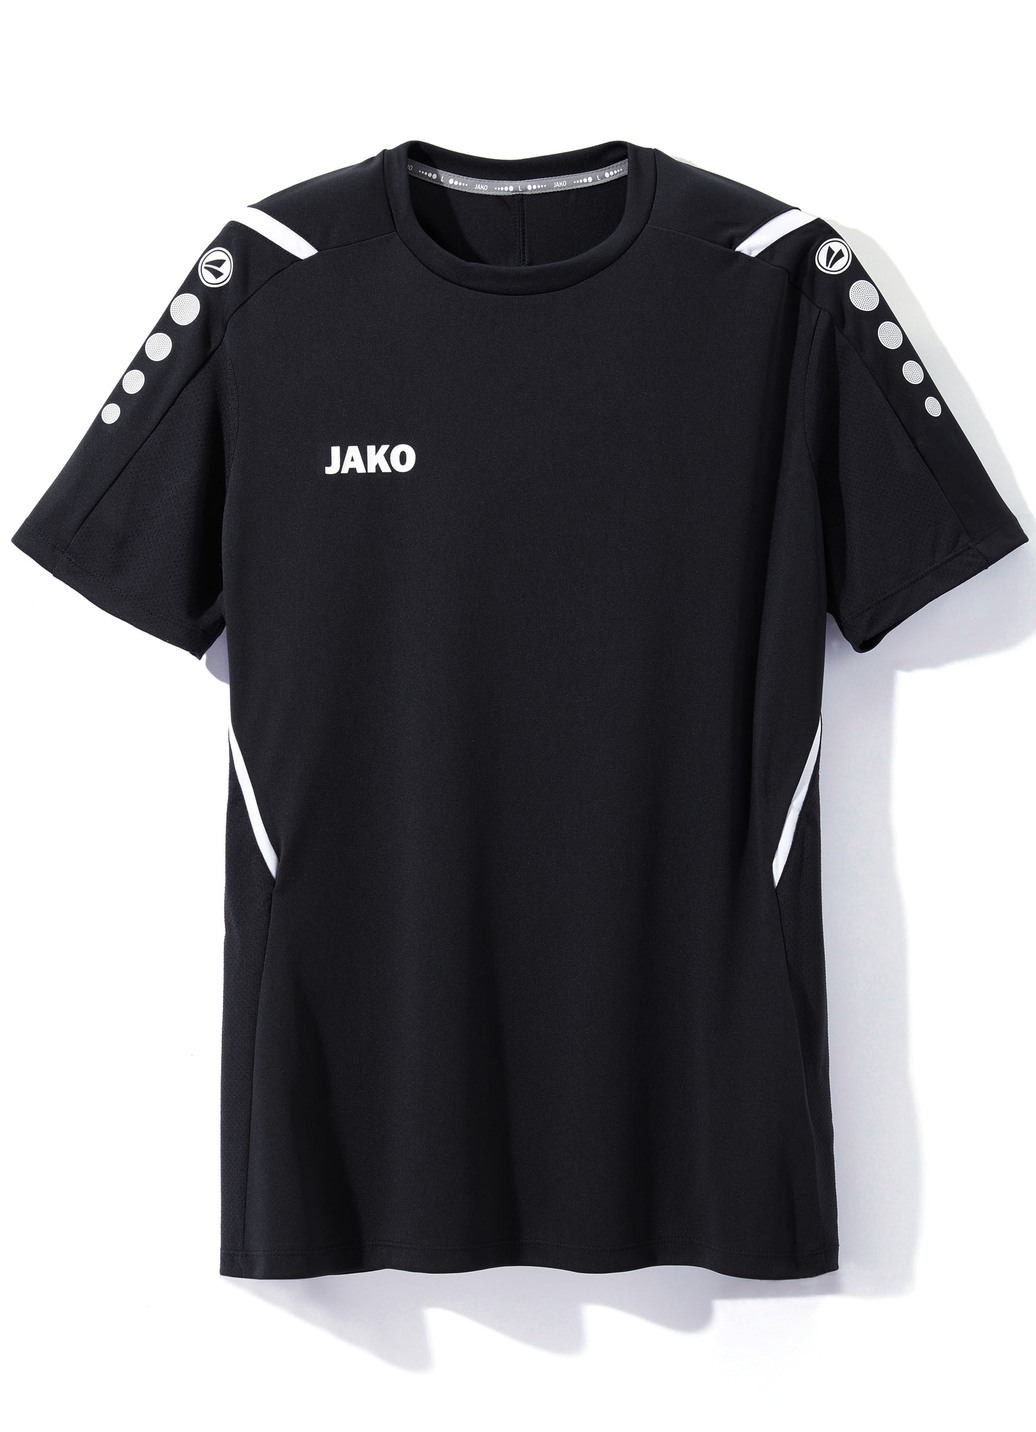 T-Shirt von „Jako“ in 4 Farben, Größe XXL (56), Schwarz von Jako